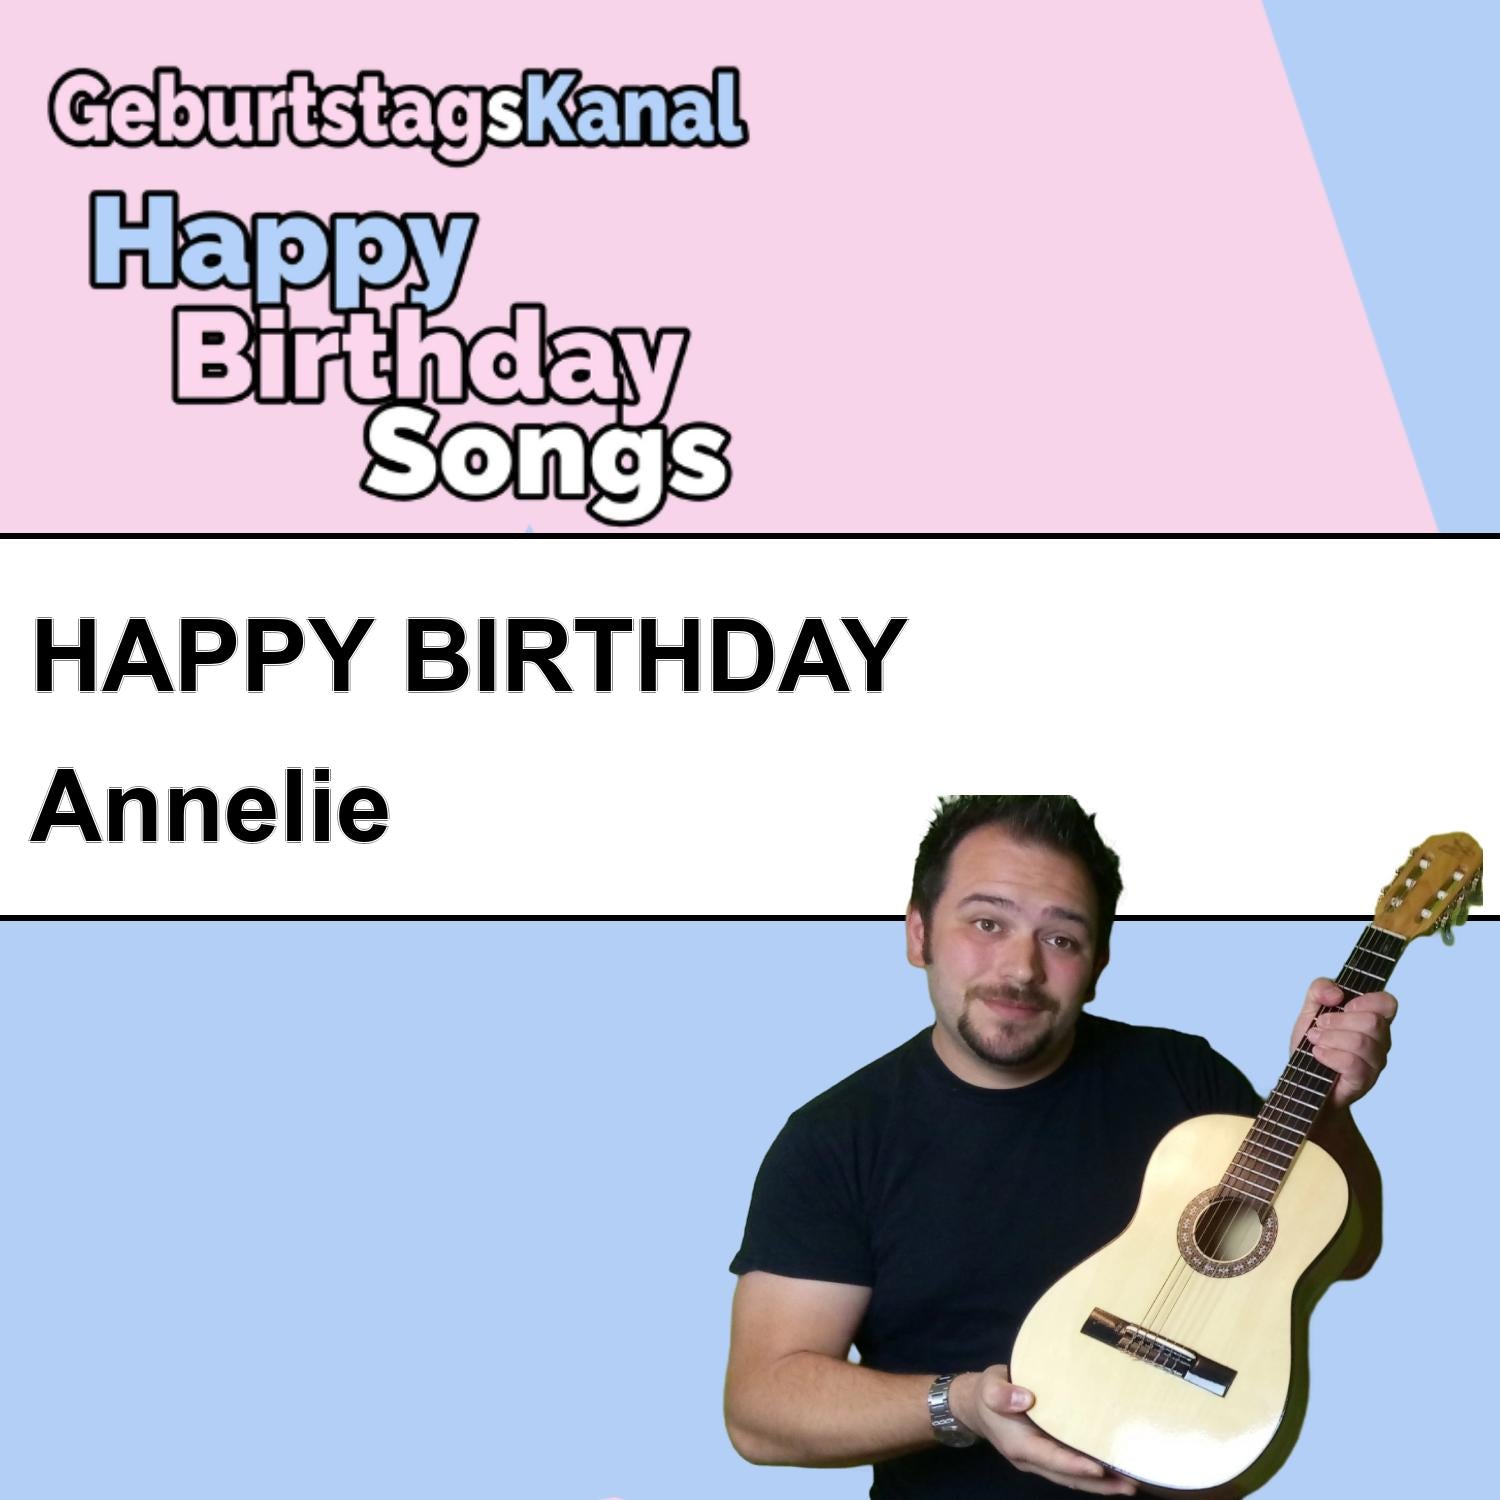 Produktbild Happy Birthday to you Annelie mit Wunschgrußbotschaft